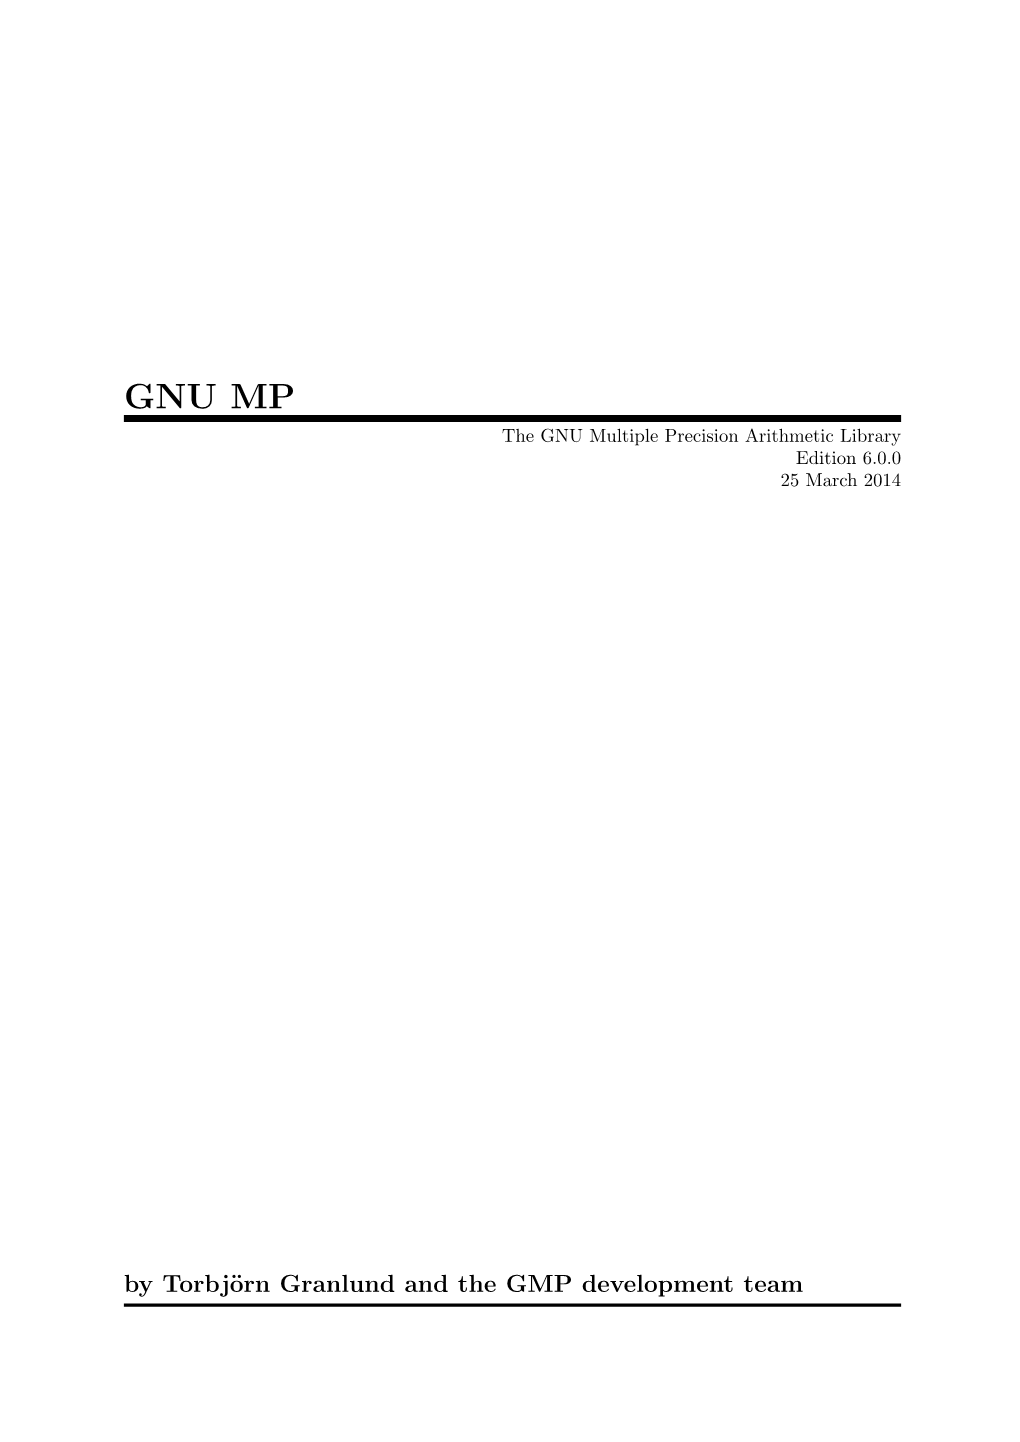 GNU MP the GNU Multiple Precision Arithmetic Library Edition 6.0.0 25 March 2014